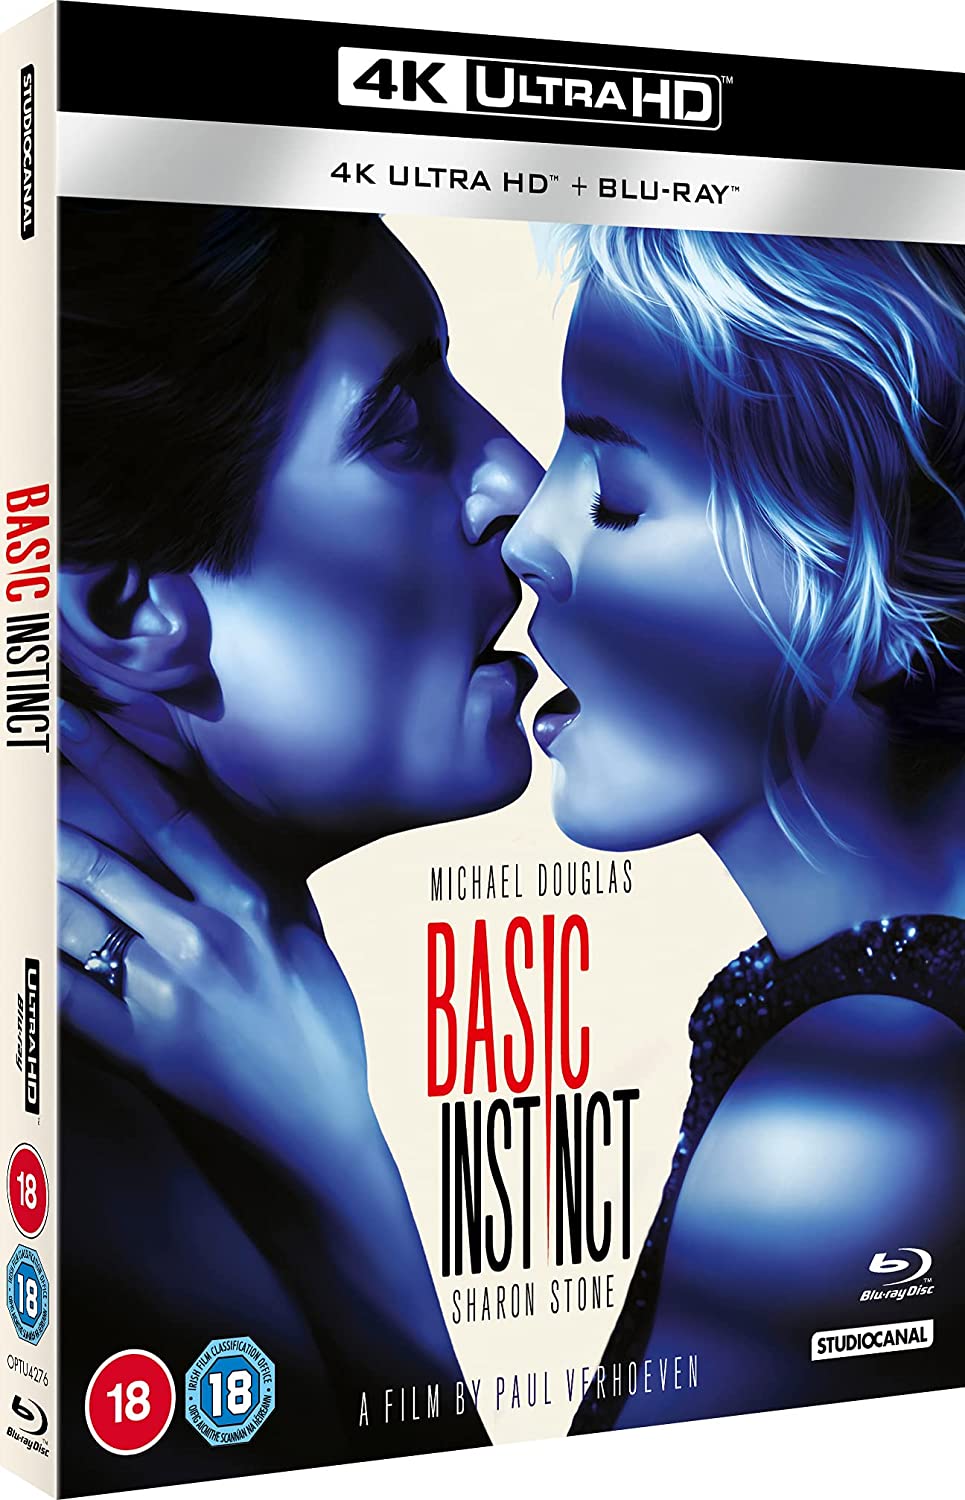 Basic Instinct (neue Restaurierung) 4K UHD – Thriller/Krimi [Blu-ray]